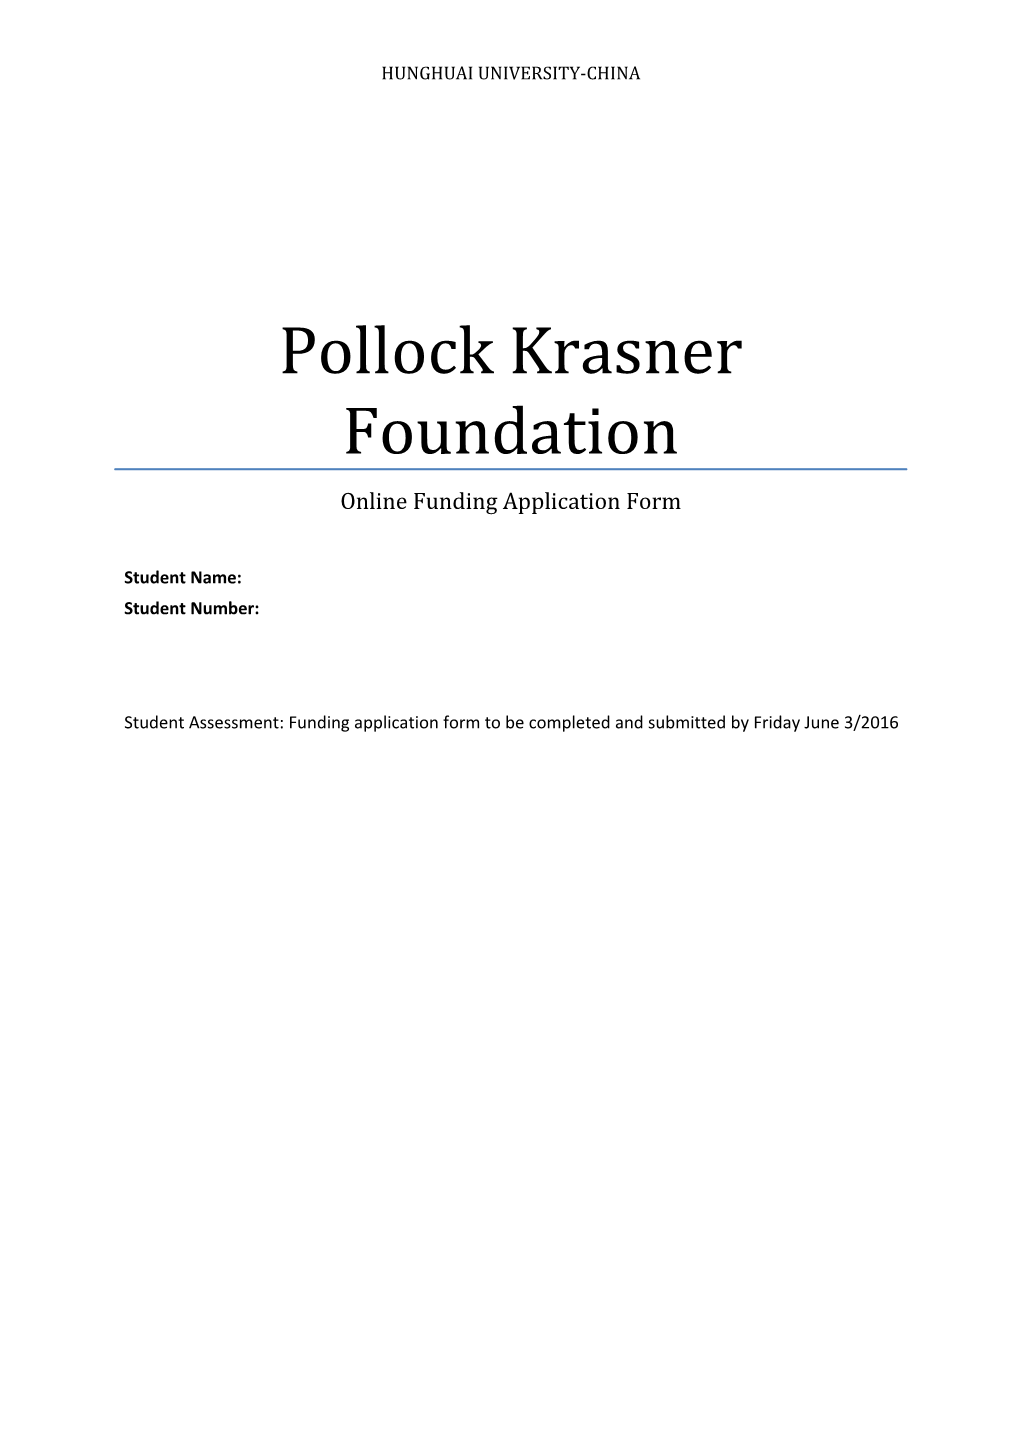 Pollock Krasner Foundation